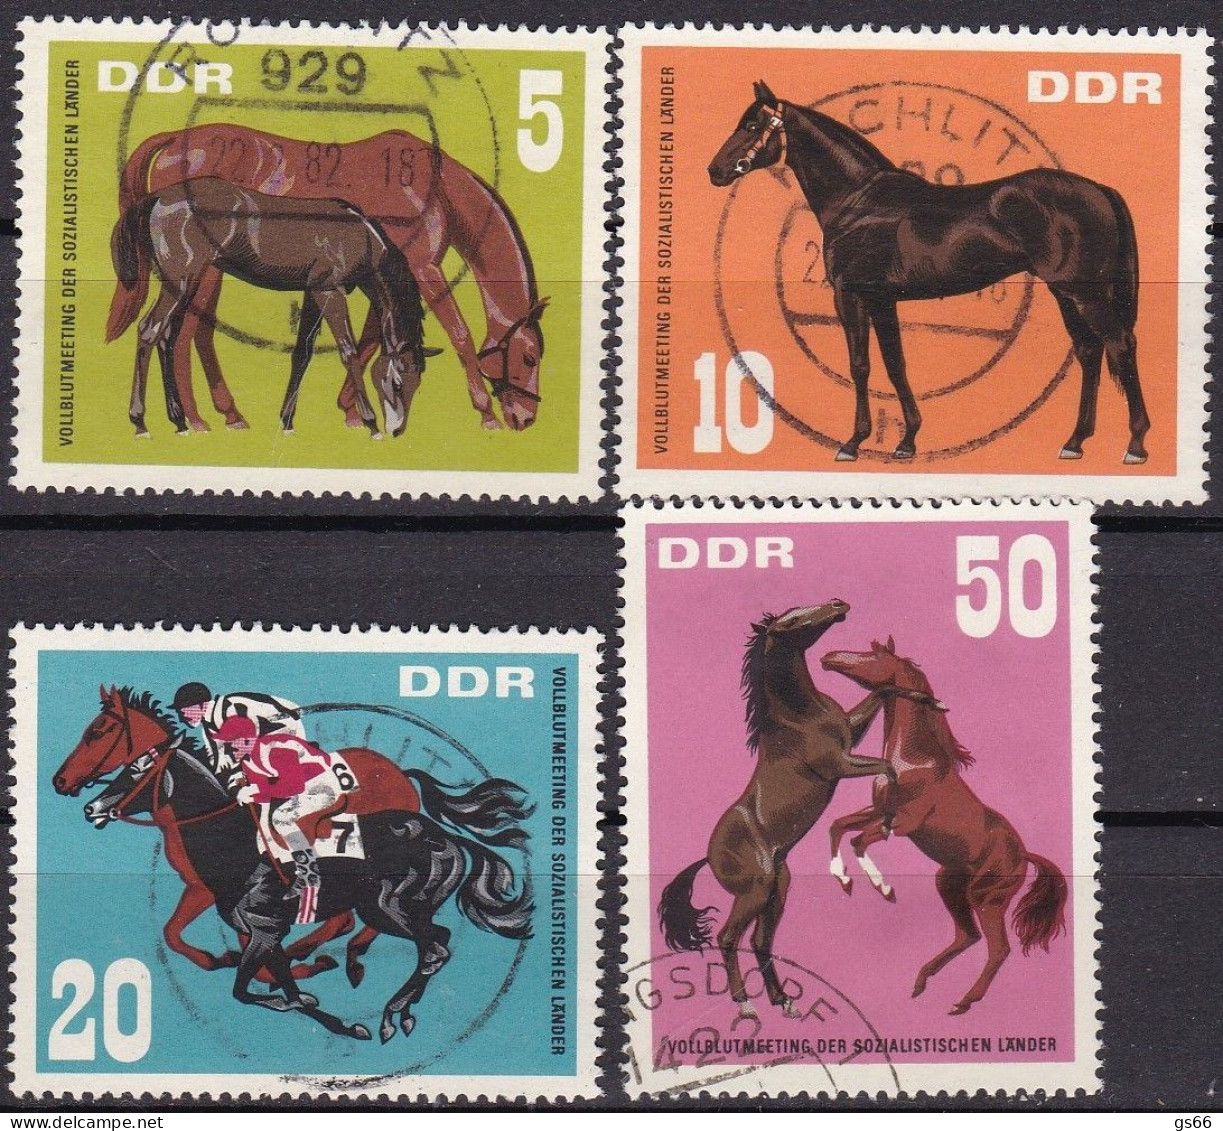 DDR  1967, 1302/05, Used Oo Vollblutmeeting Der Sozialistischen Länder, Hoppegarten. - Used Stamps